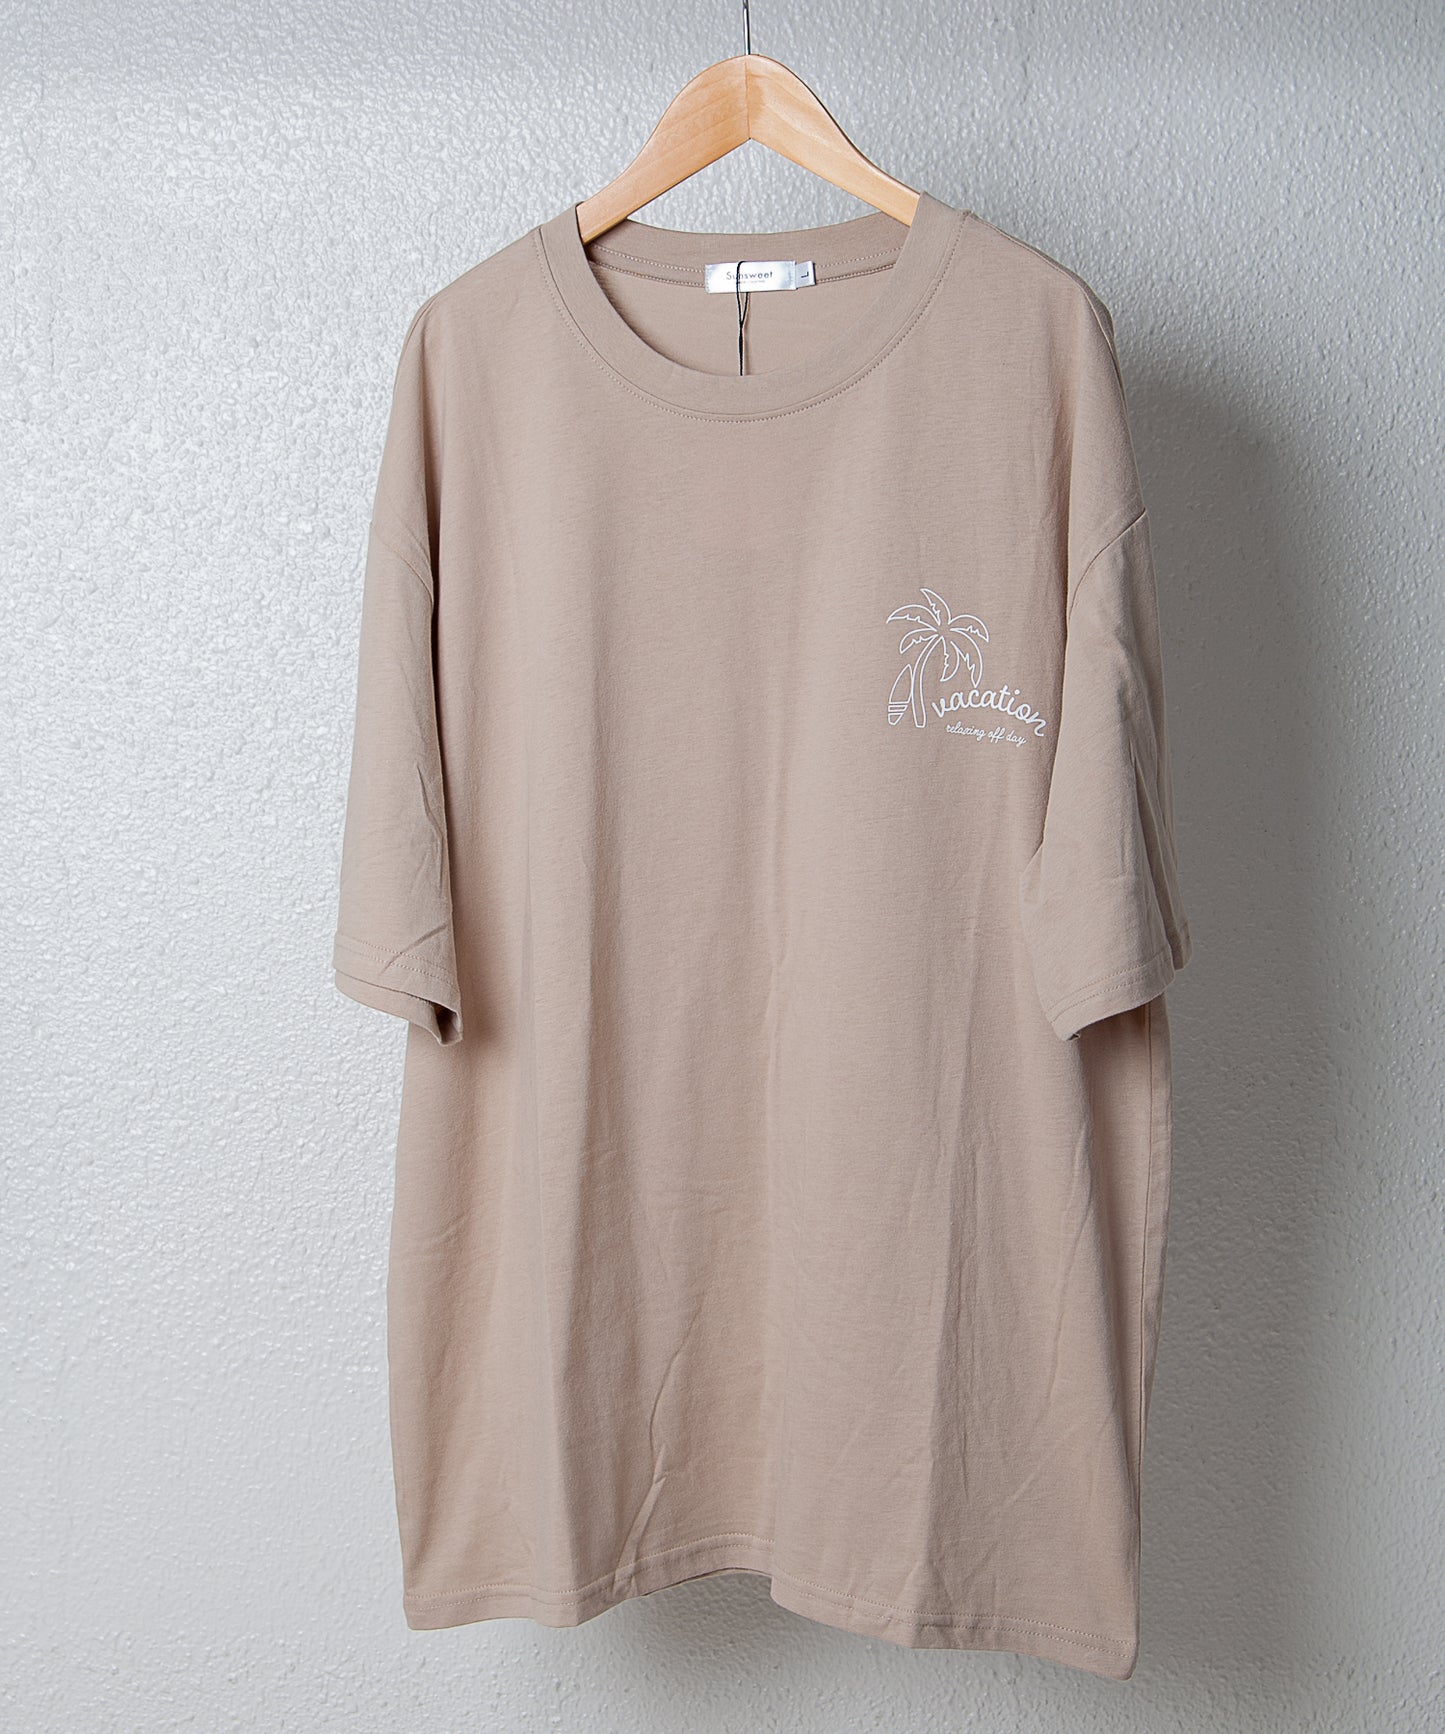 【ペアルック】バックサーフボックスロゴ半袖Tシャツ